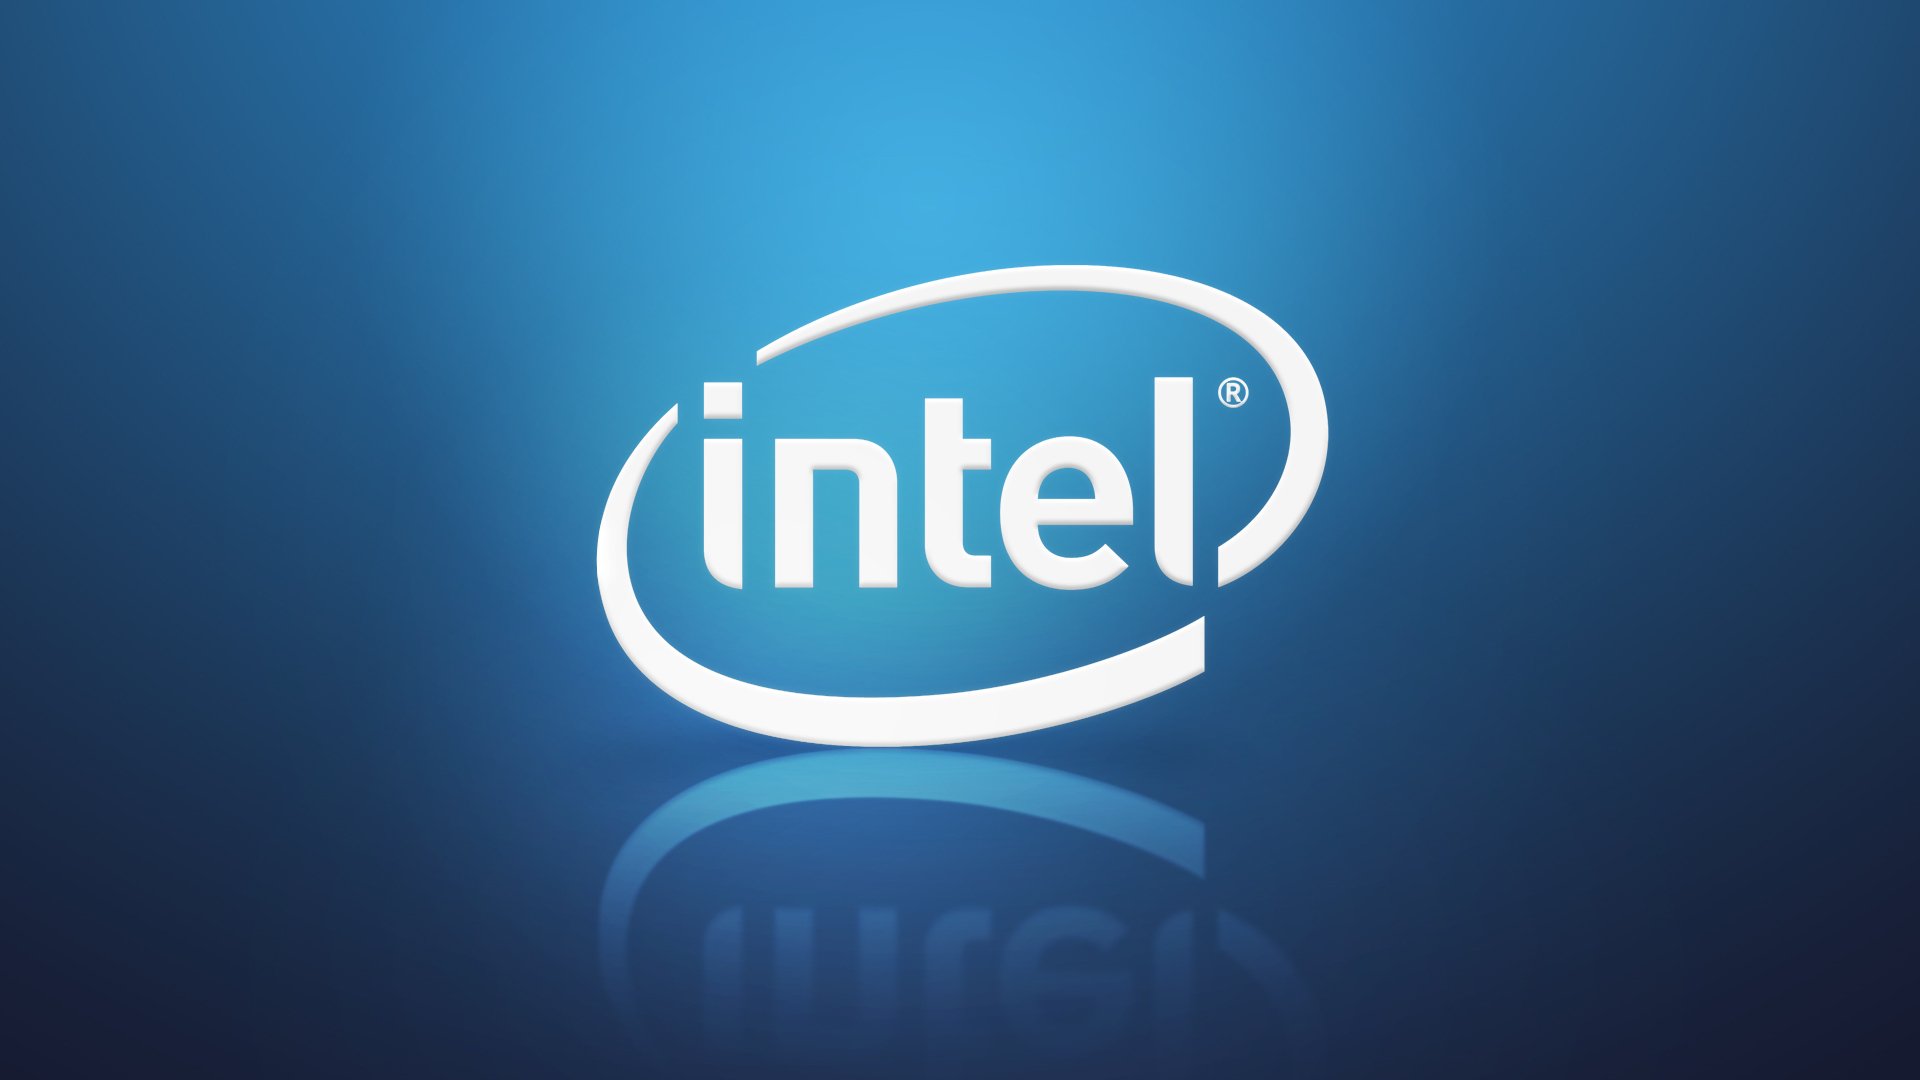 intel логотип интел градиент синий голубой отражение